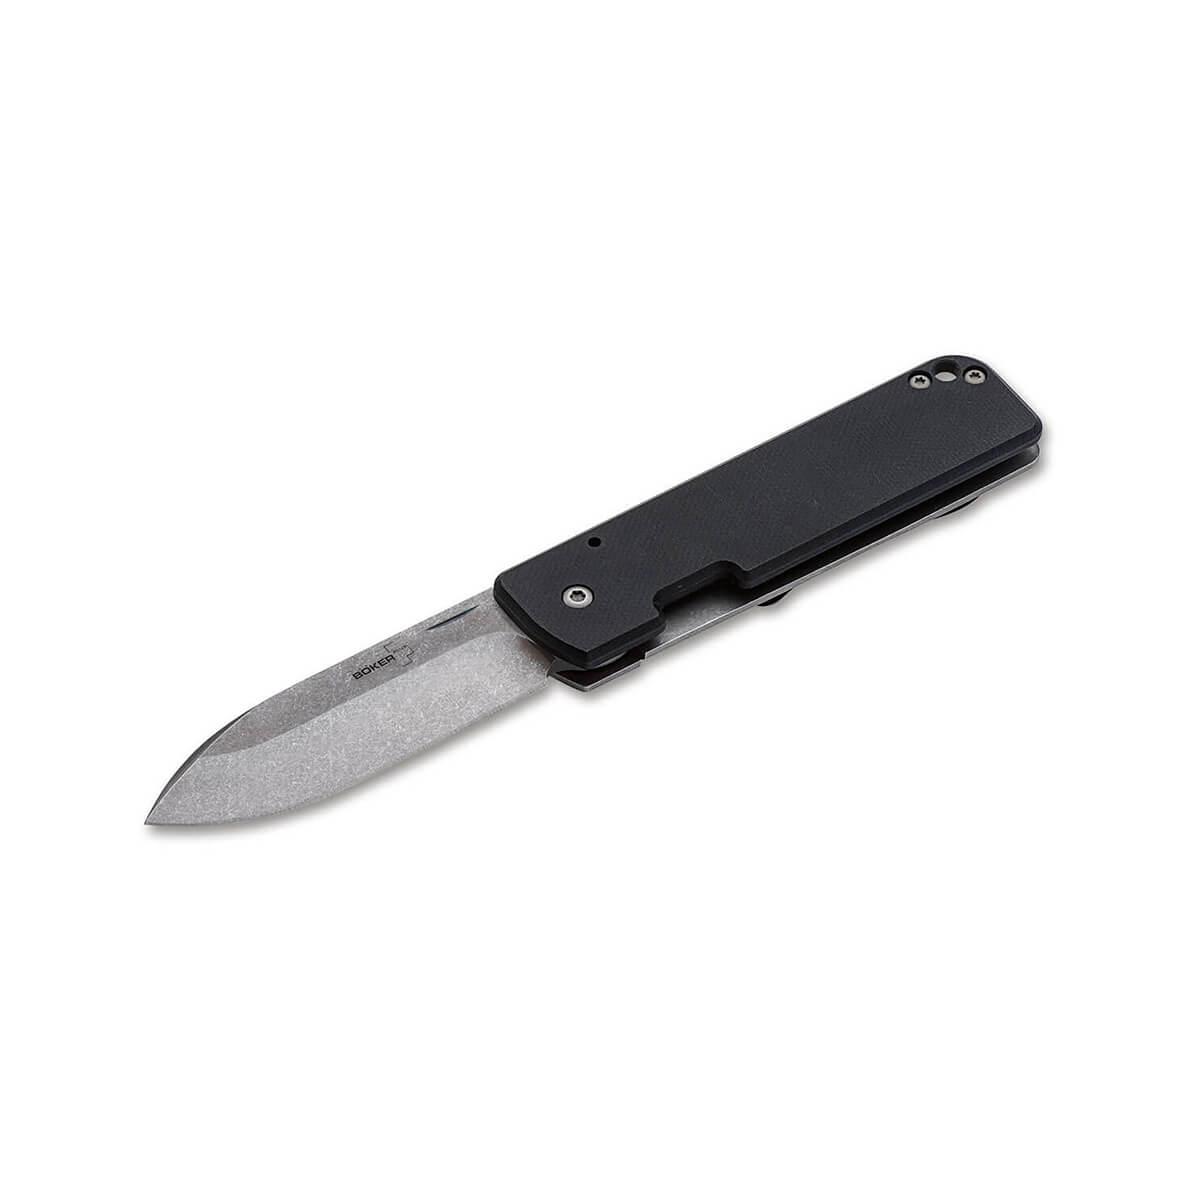  Lancer 42 G10 Knife